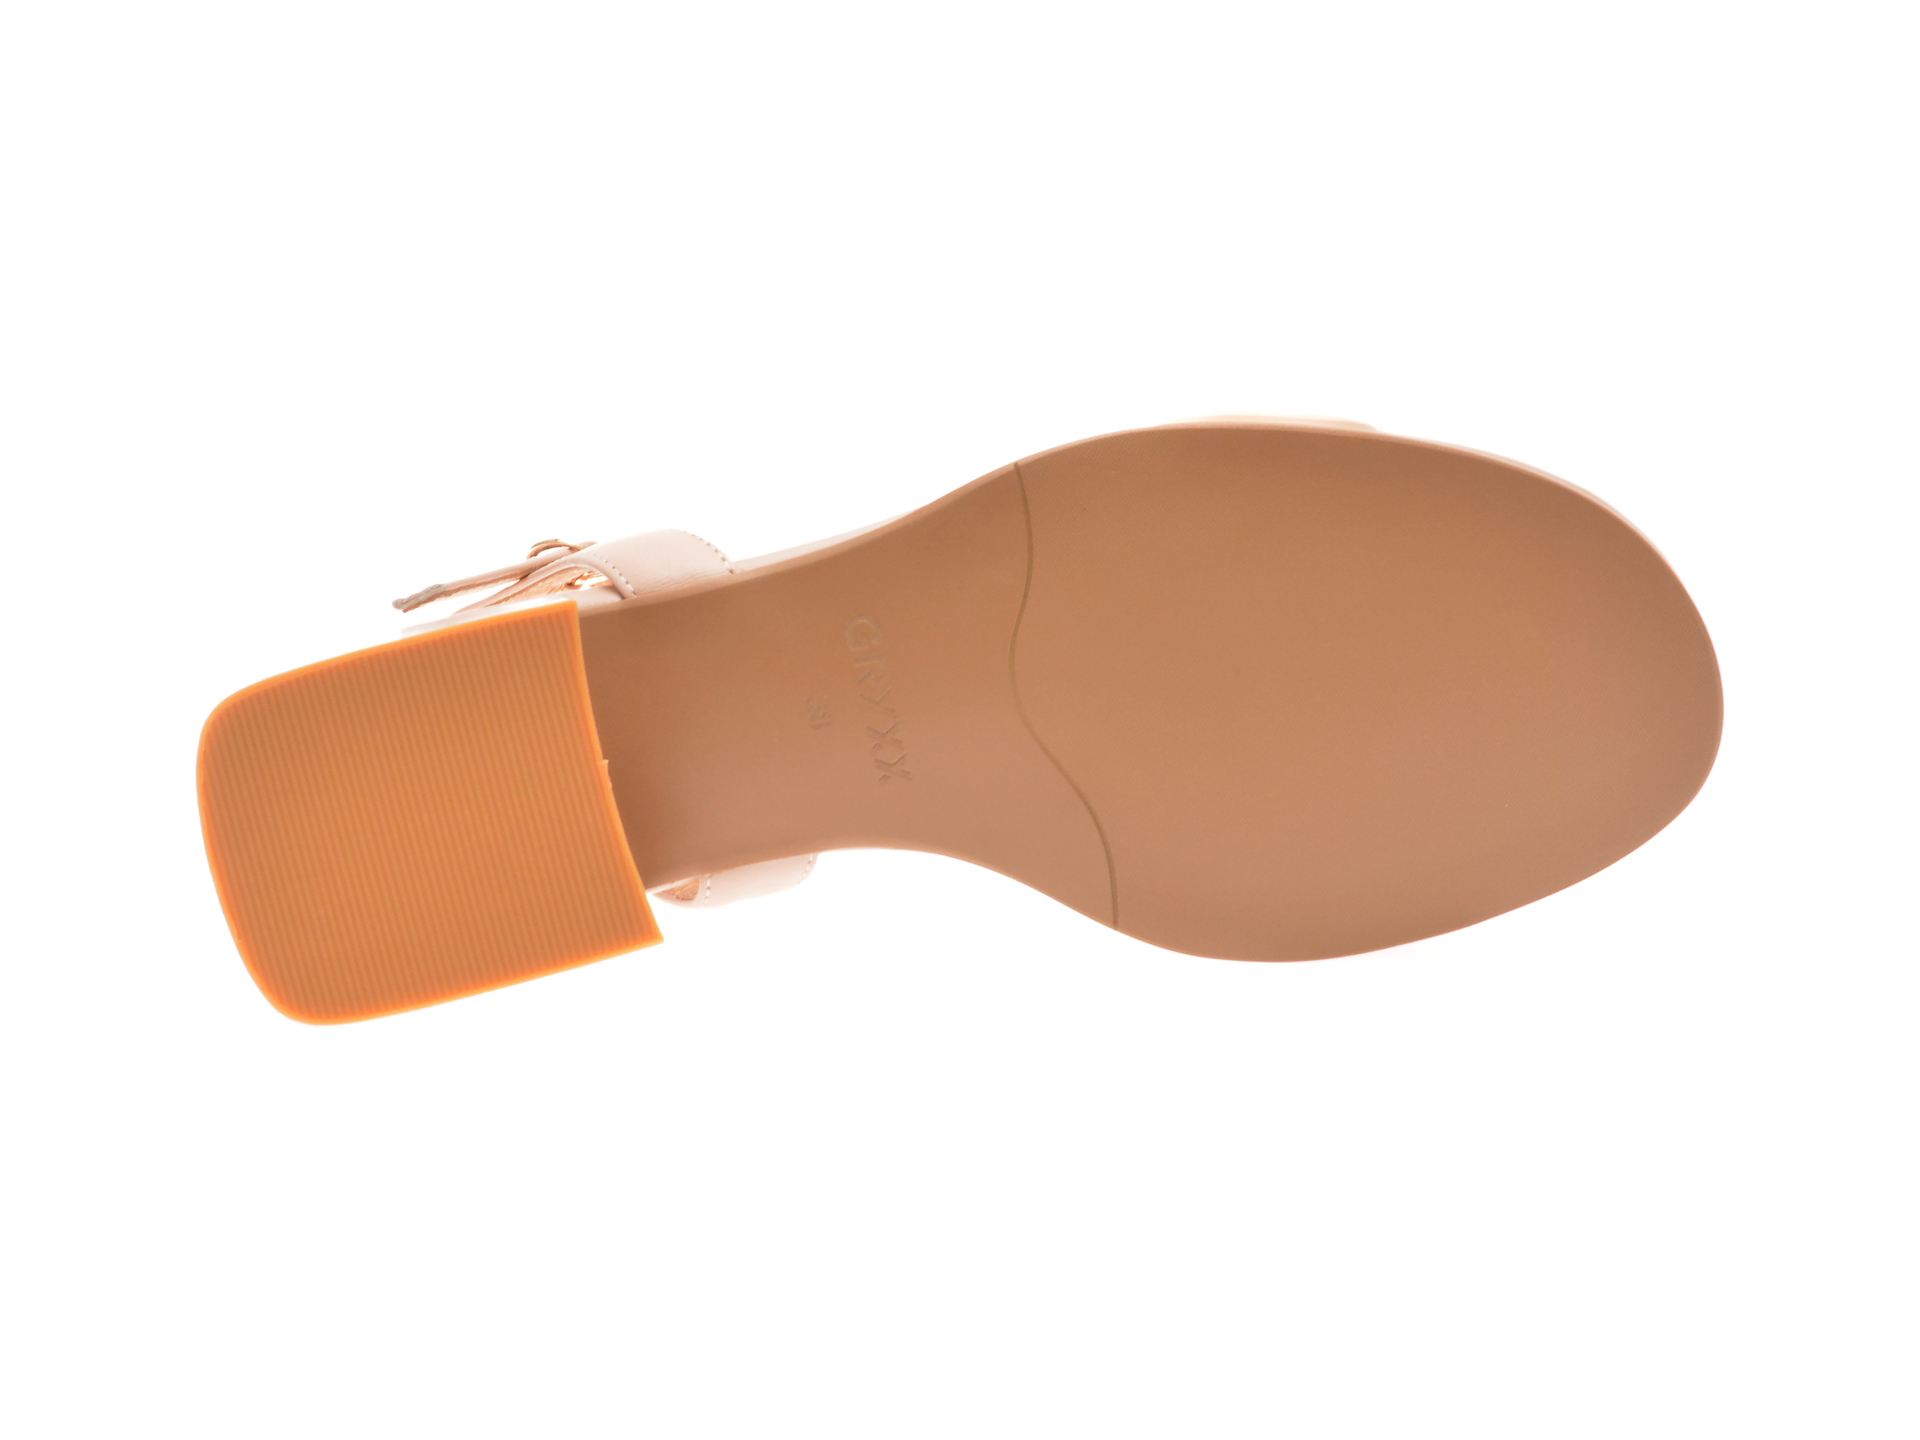 Sandale casual GRYXX nude, F51C09, din piele naturala